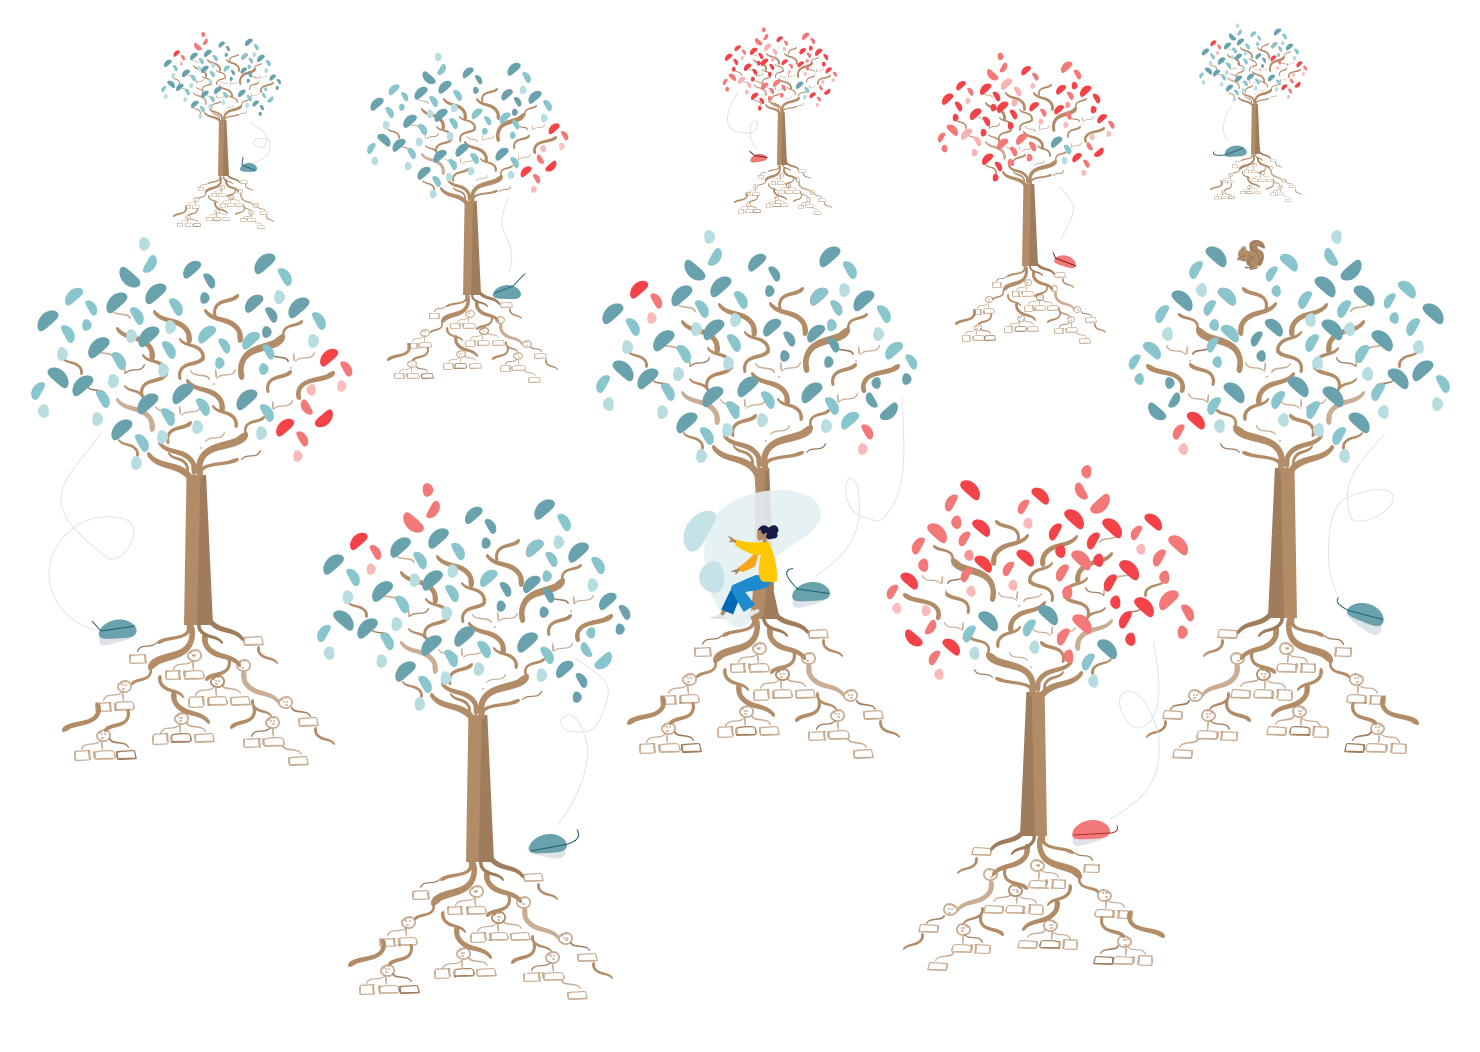 Zehn illustrierte Bäume mit grünen und roten Bäumen.